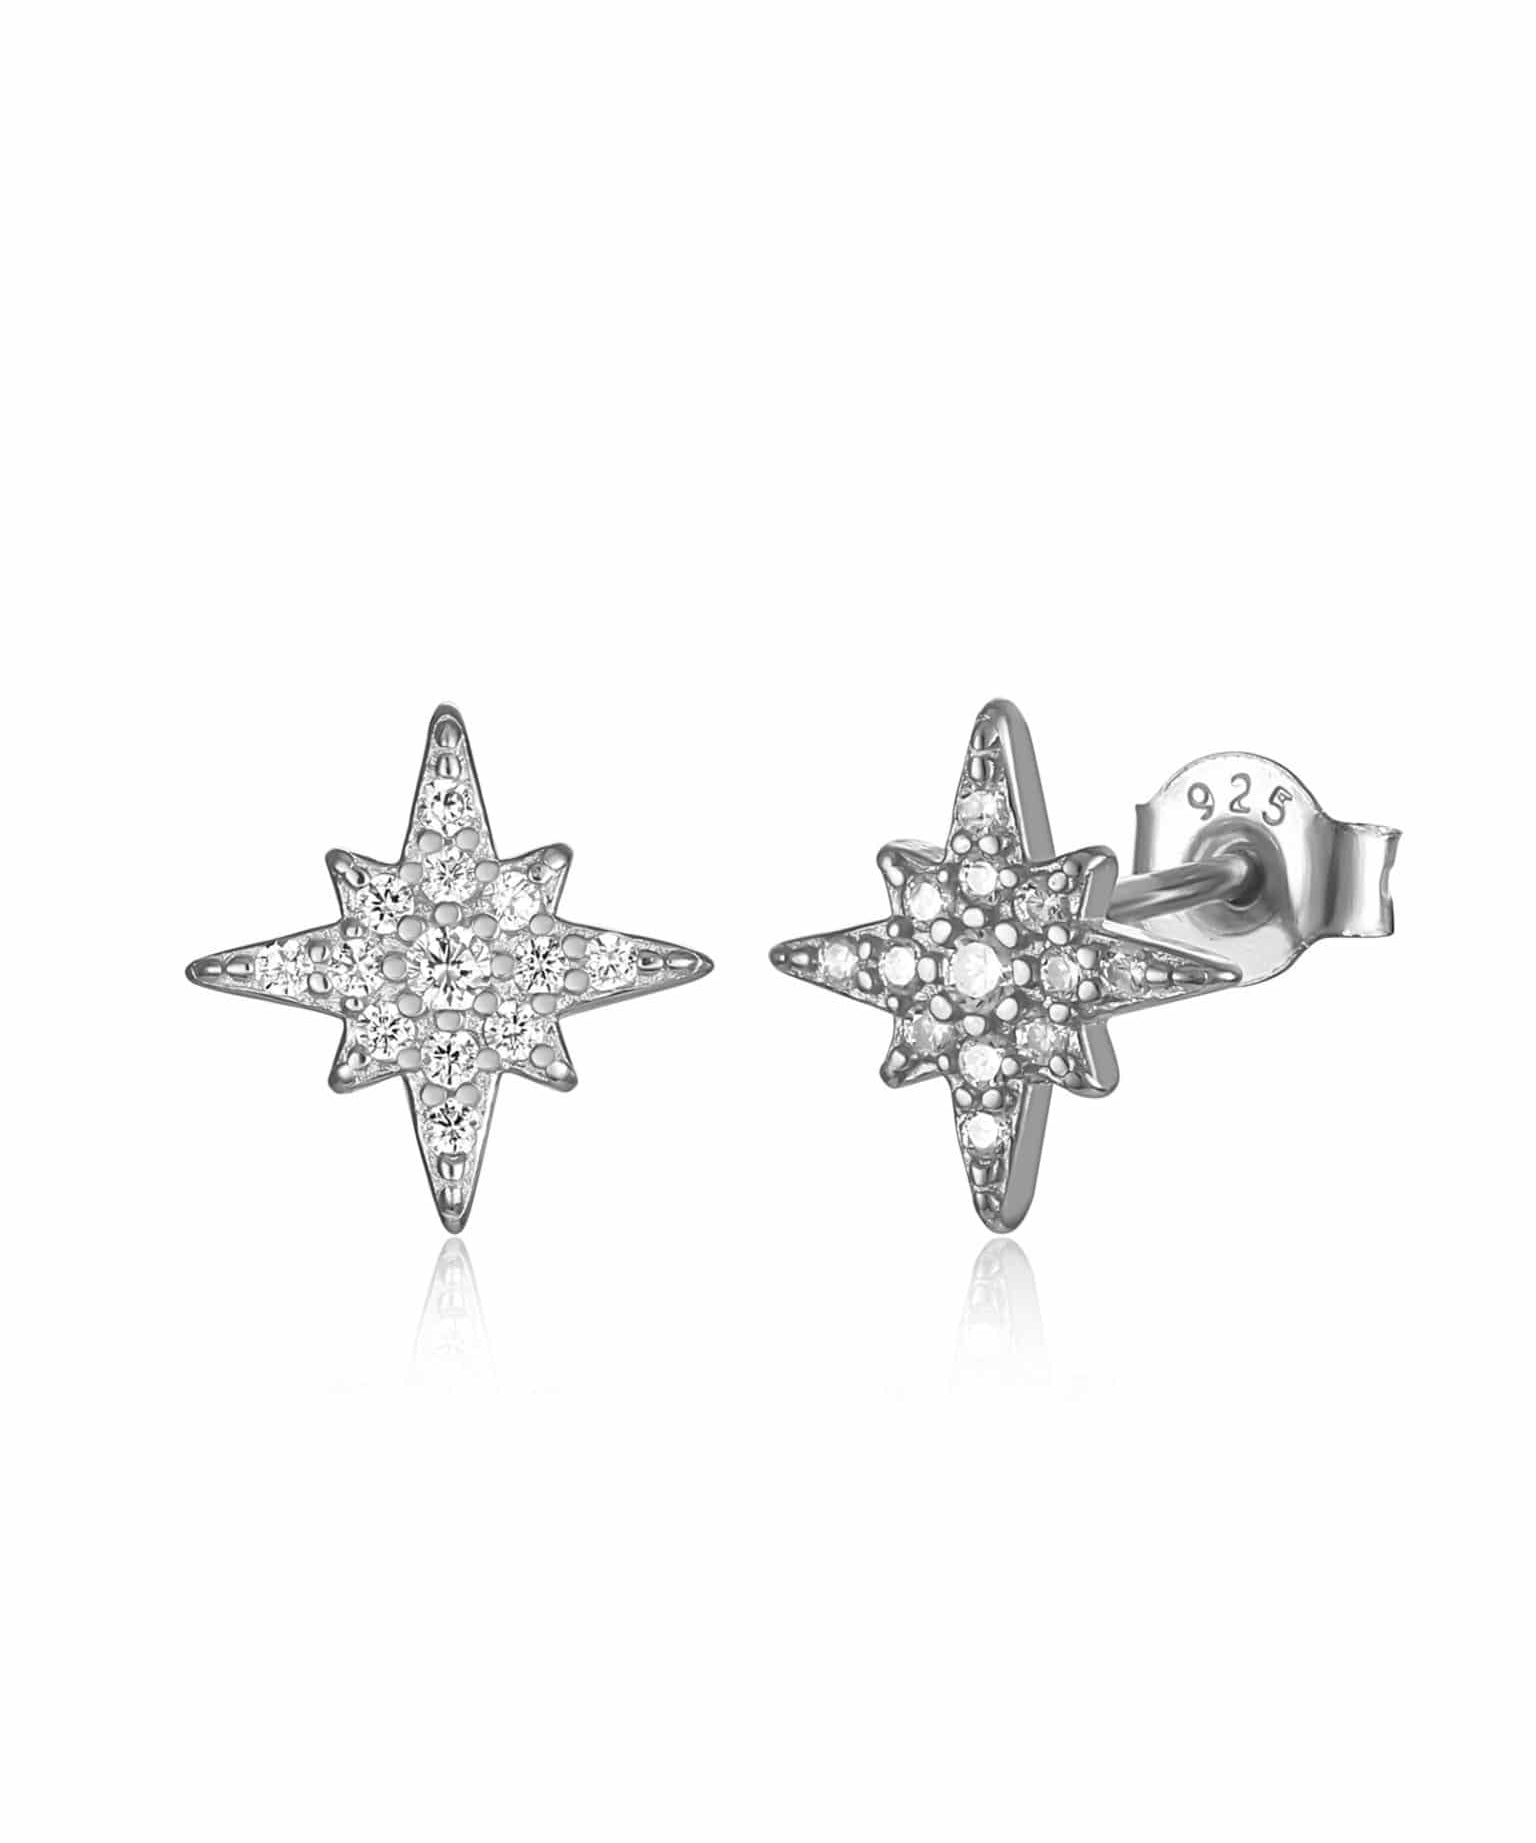 Star stud earrings silver